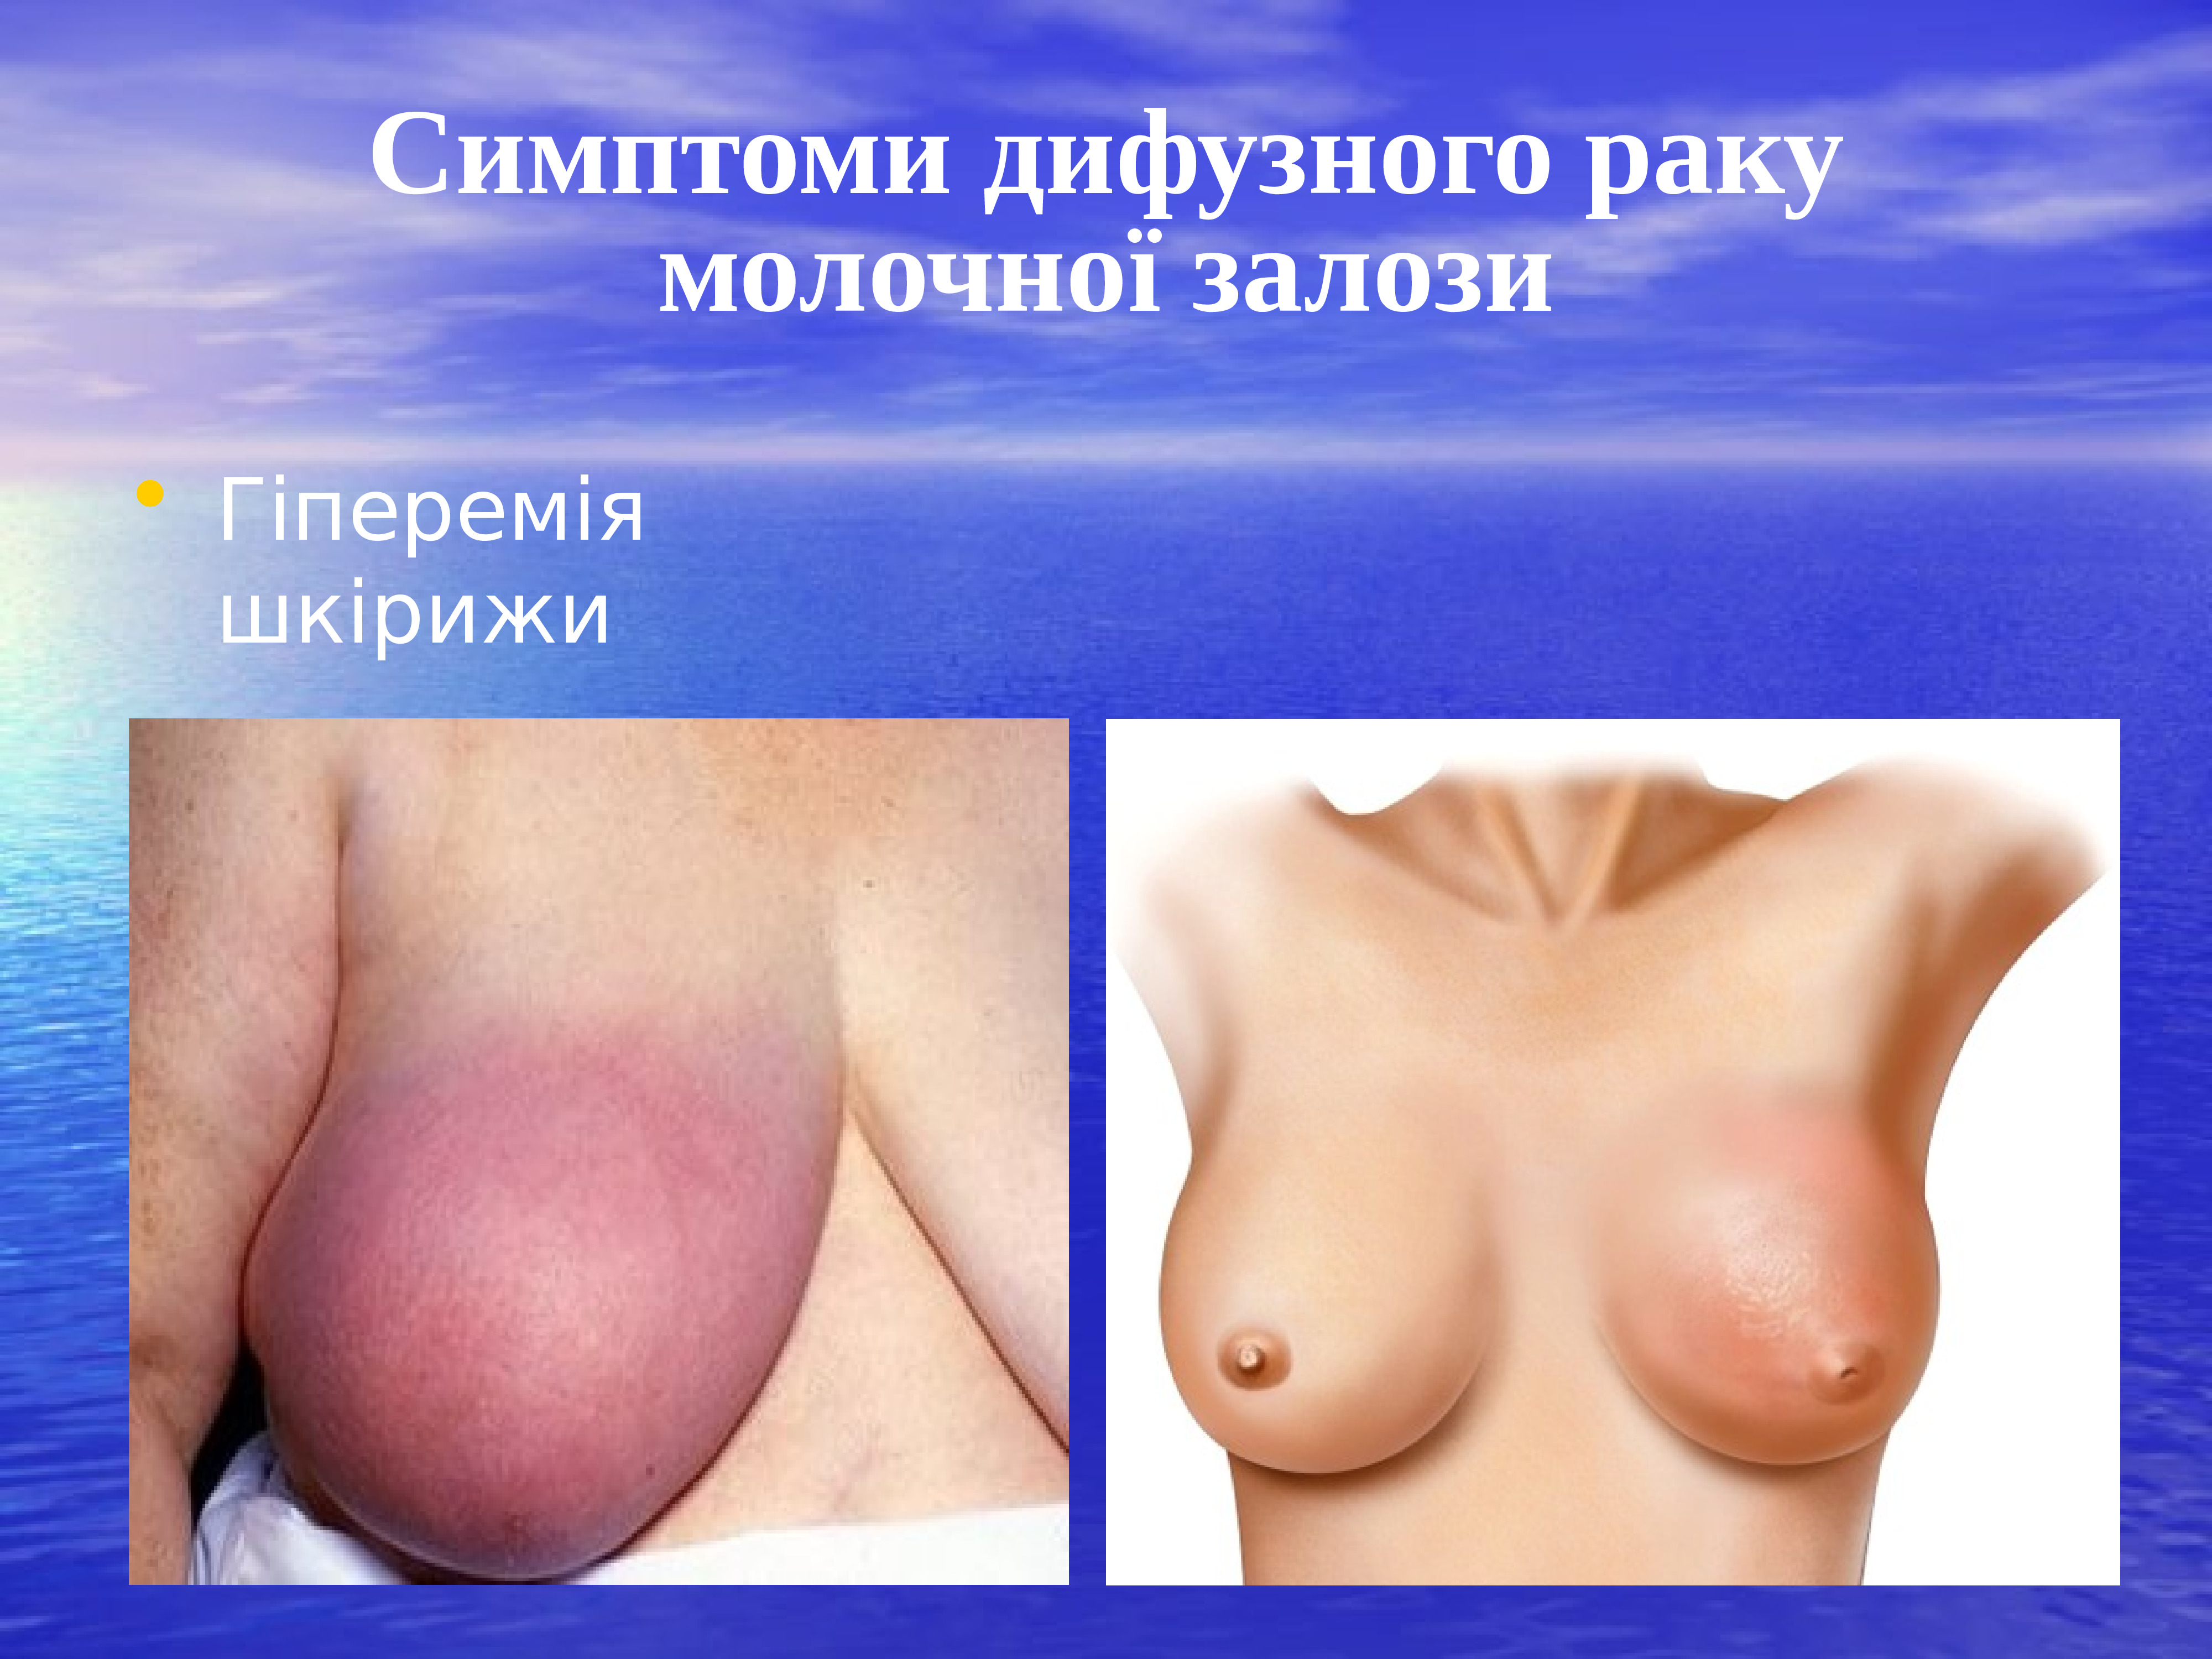 первые признаки рака груди у женщин фото 24